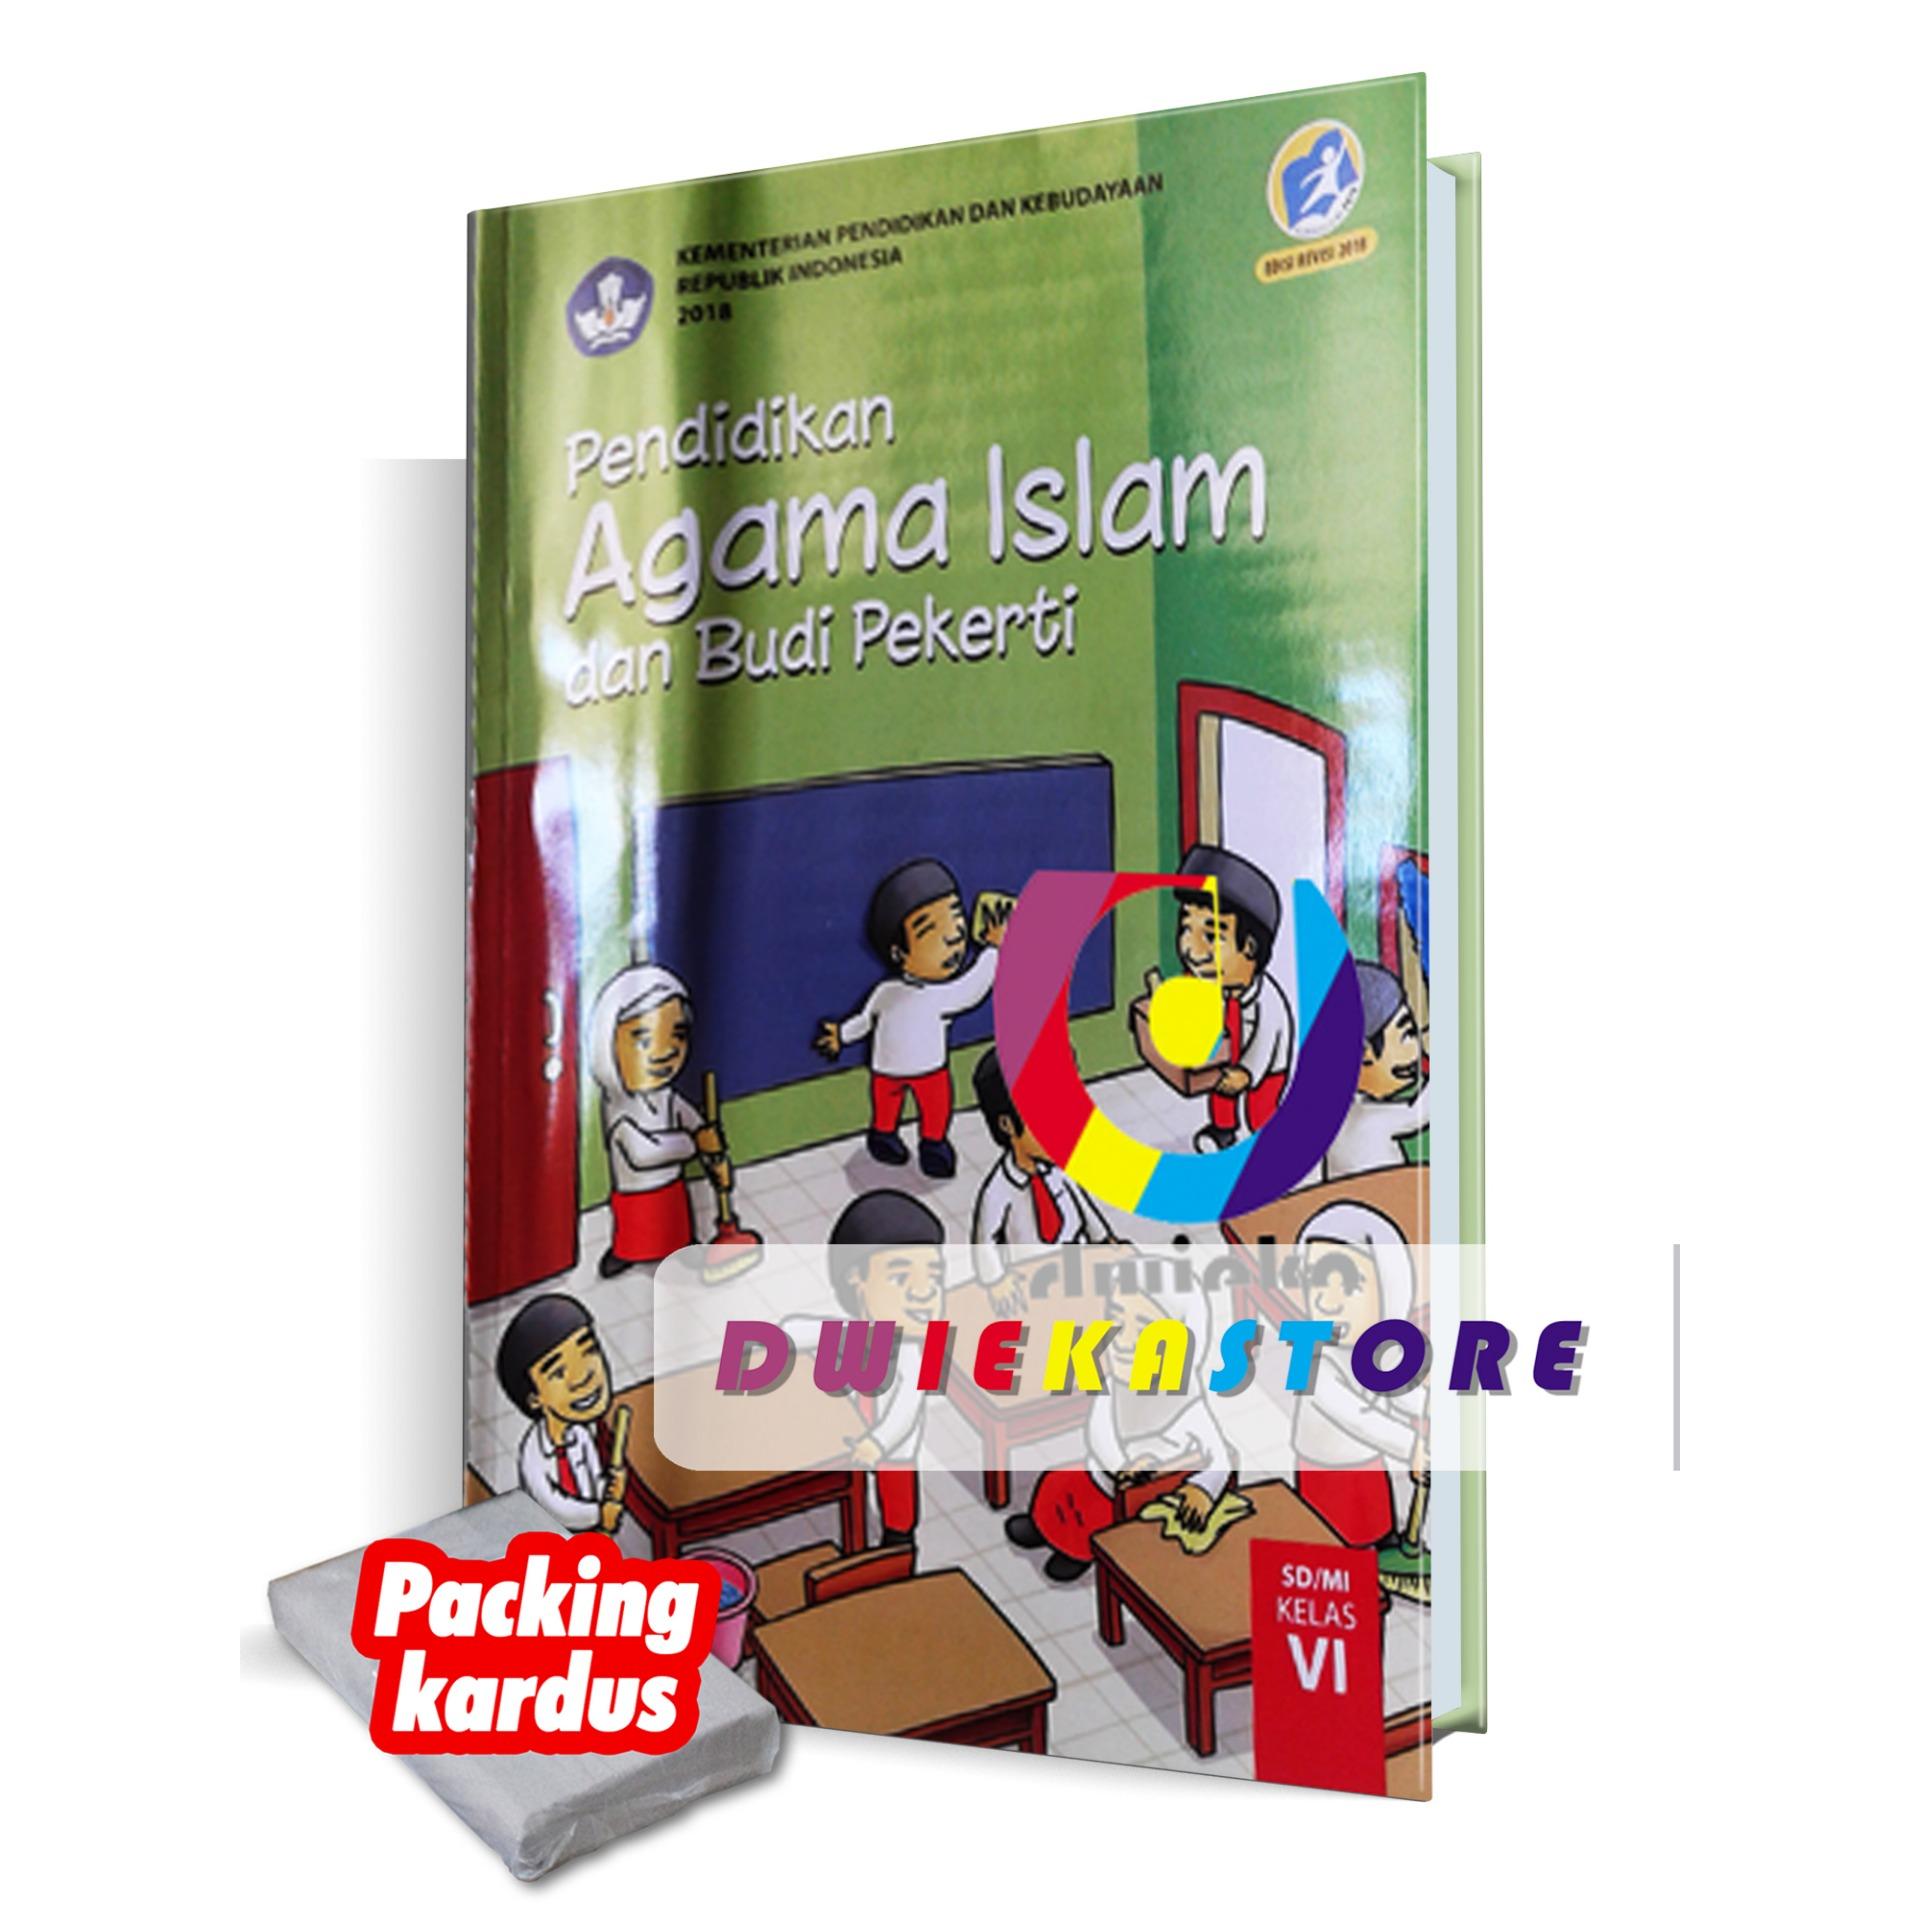 Buku Pendidikan Agama Islam dan Budi Pekerti Kelas 6 REVISI 2018